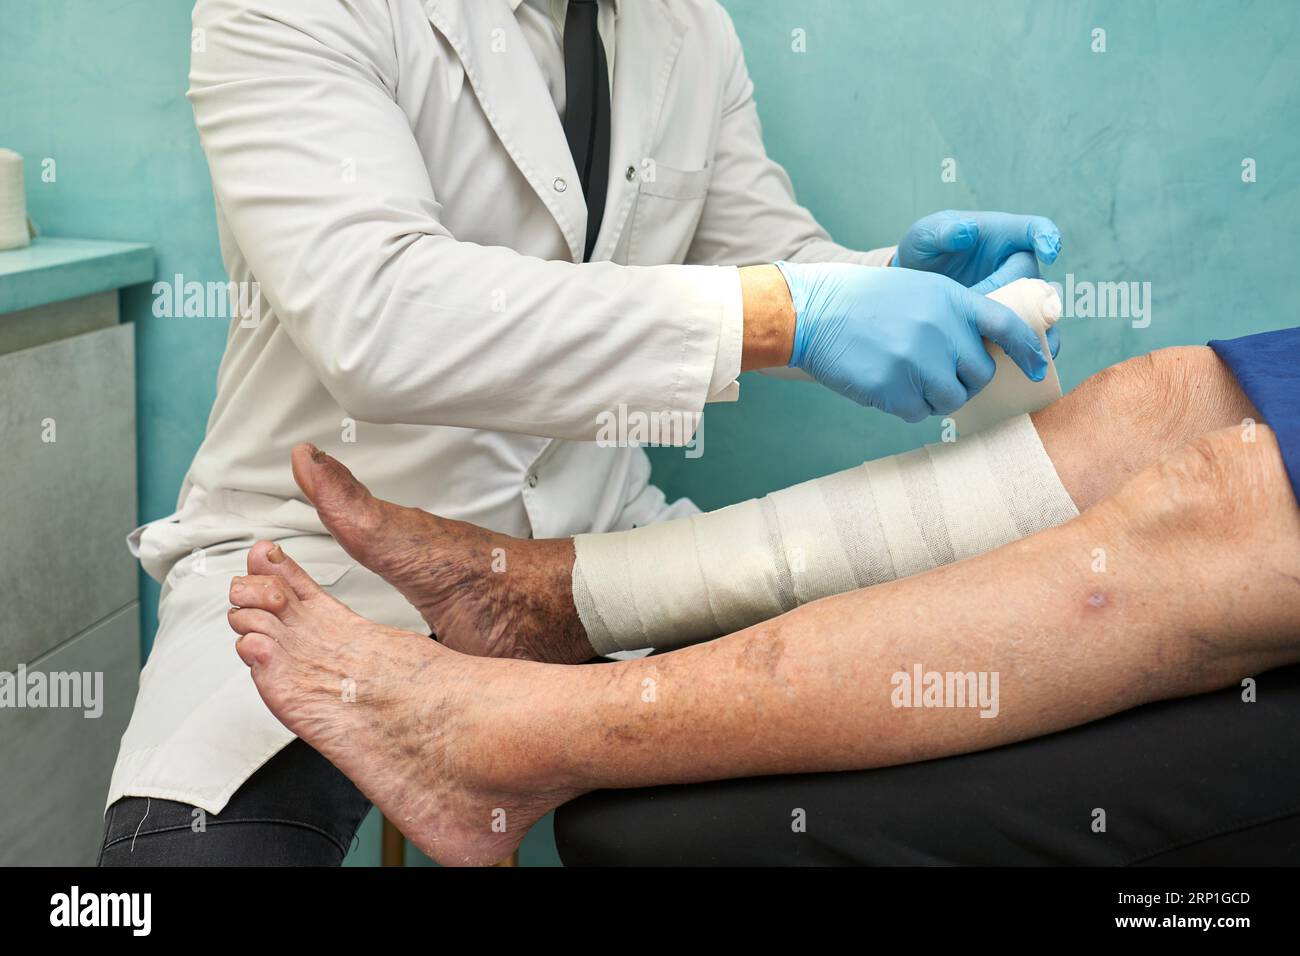 Docteur enveloppant des bandages de compression autour des jambes d'une femme Banque D'Images